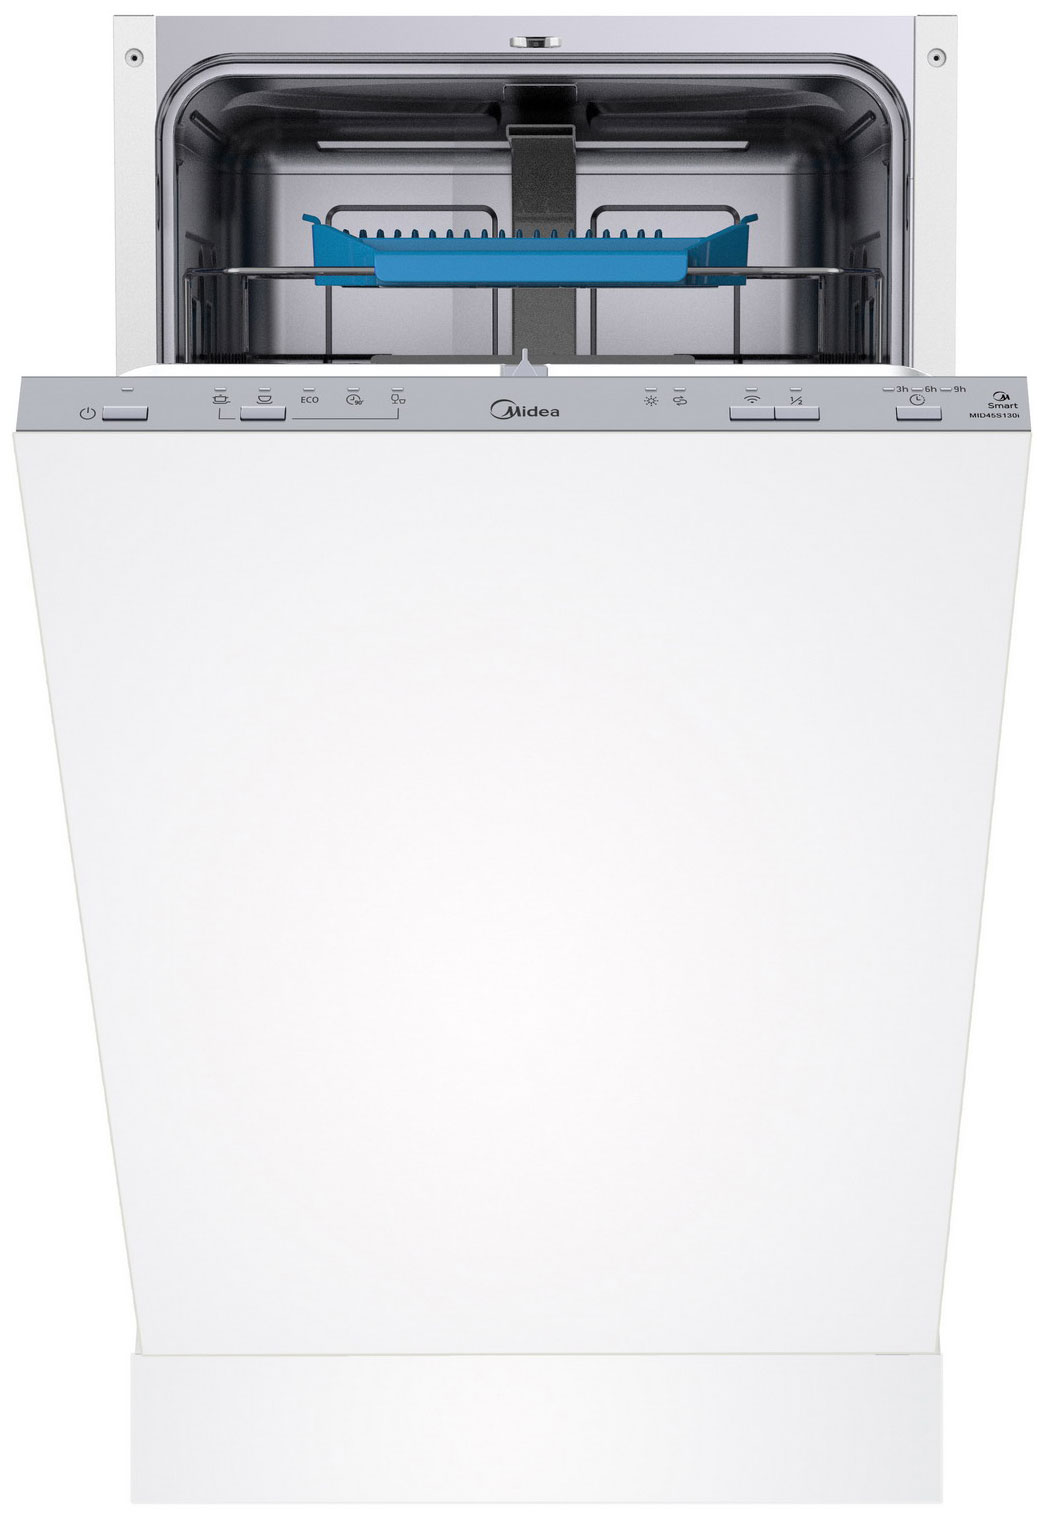 Встраиваемая посудомоечная машина Midea MID45S130i встраиваемая посудомоечная машина midea mid60s450i